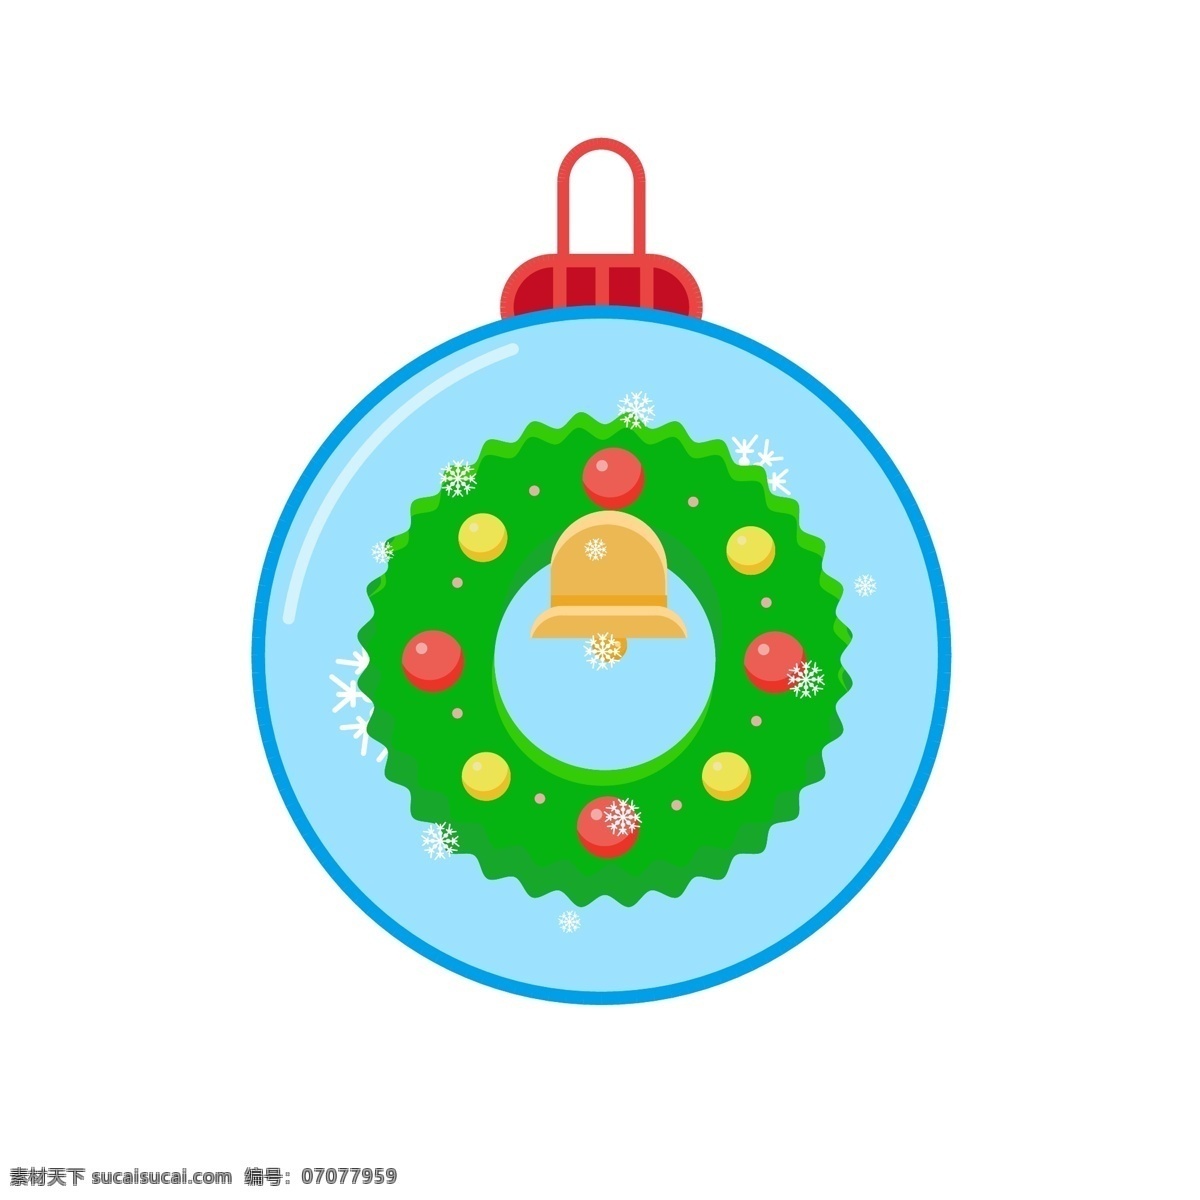 圣诞节 元素 装饰 图标 雪人 蝴蝶结 铃铛 雪花 装饰球 花环